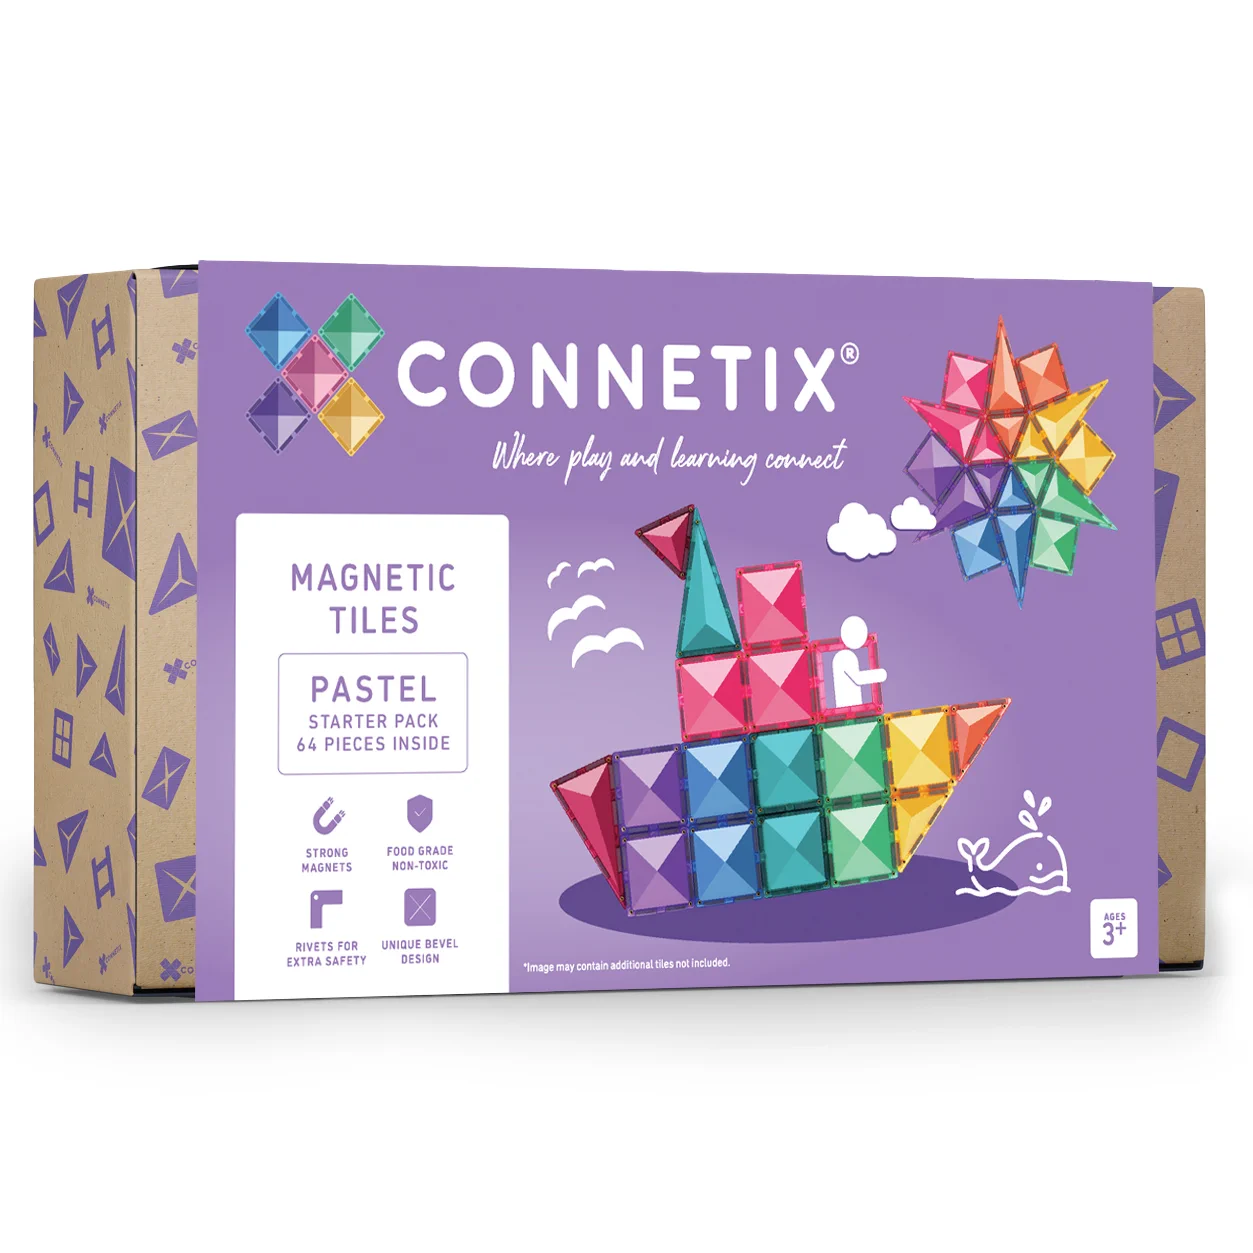 Otroška magnetna sestavljanka Connetix s 64 magnetnimi ploščicami pastelnih barv.